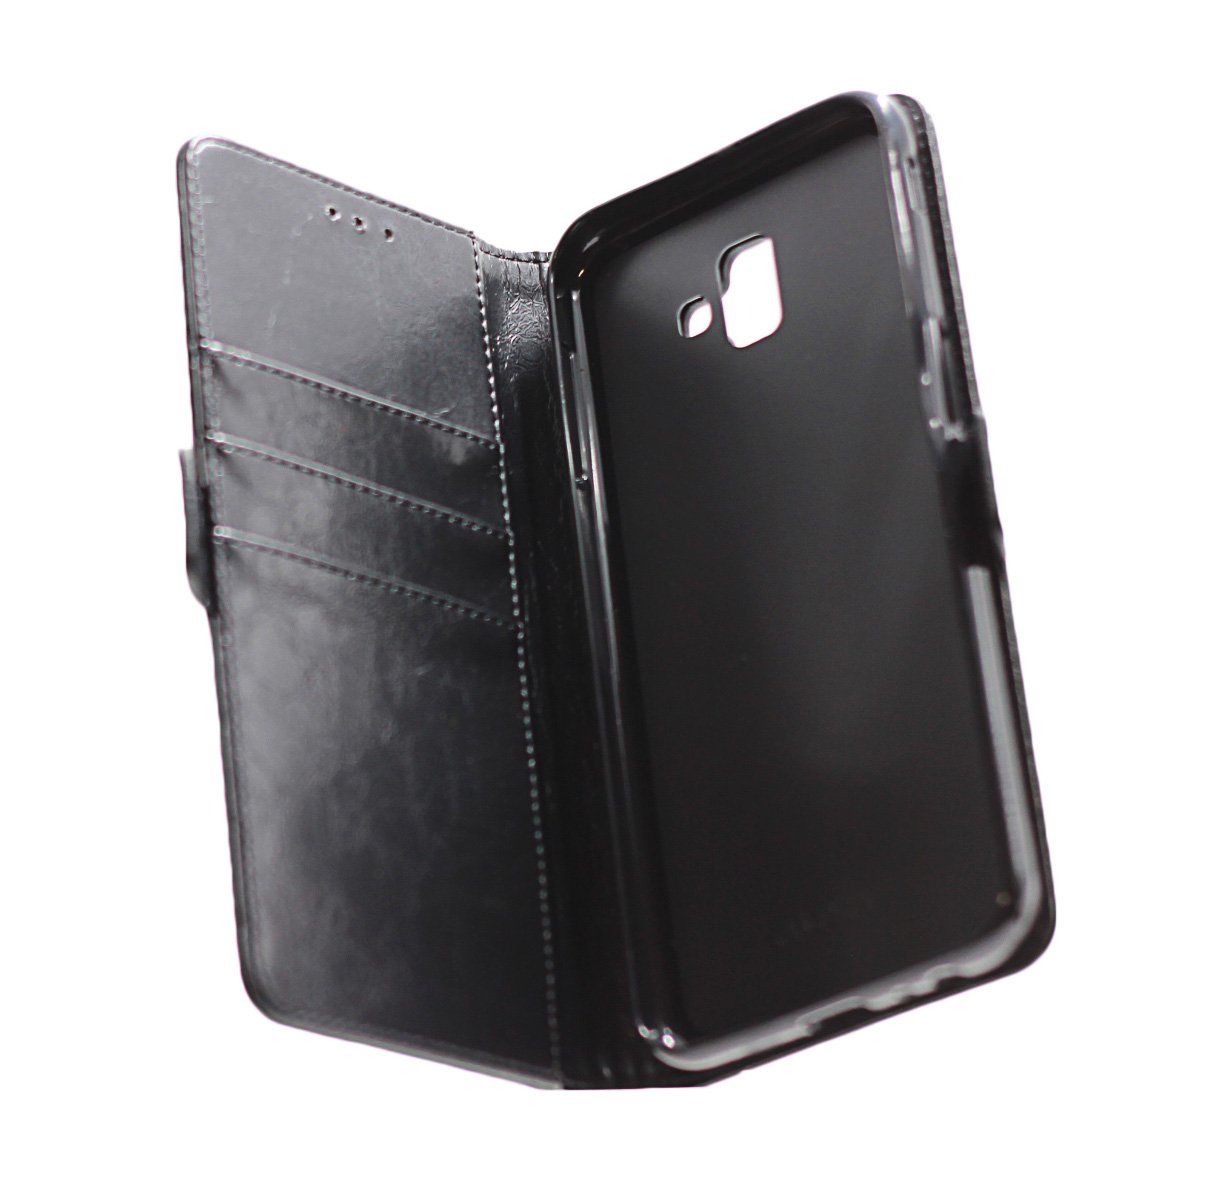 Samsung J6 Plus Premium Quality Leather Phone Case Black